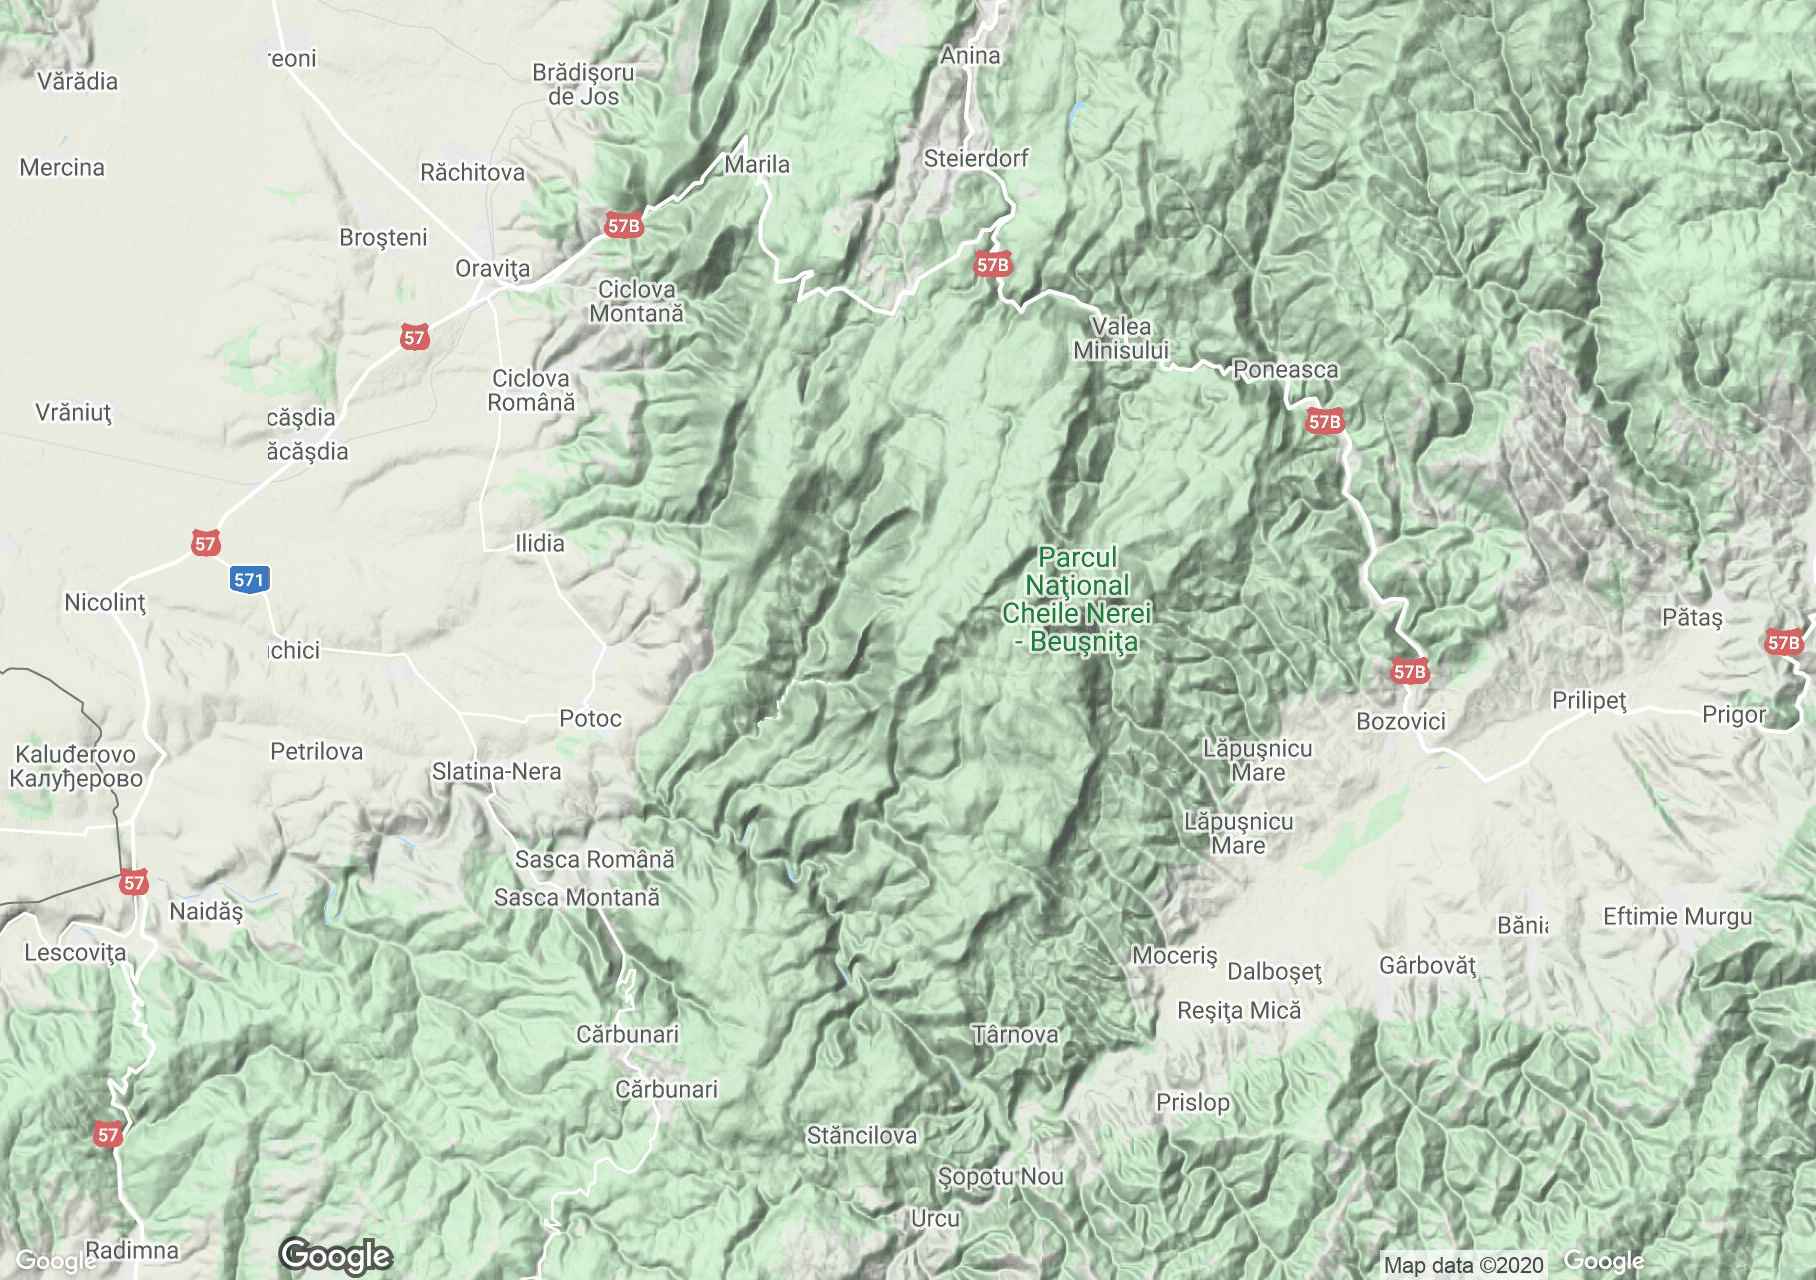 Banati hegység: Szörényi hegység interaktív turista térképe.